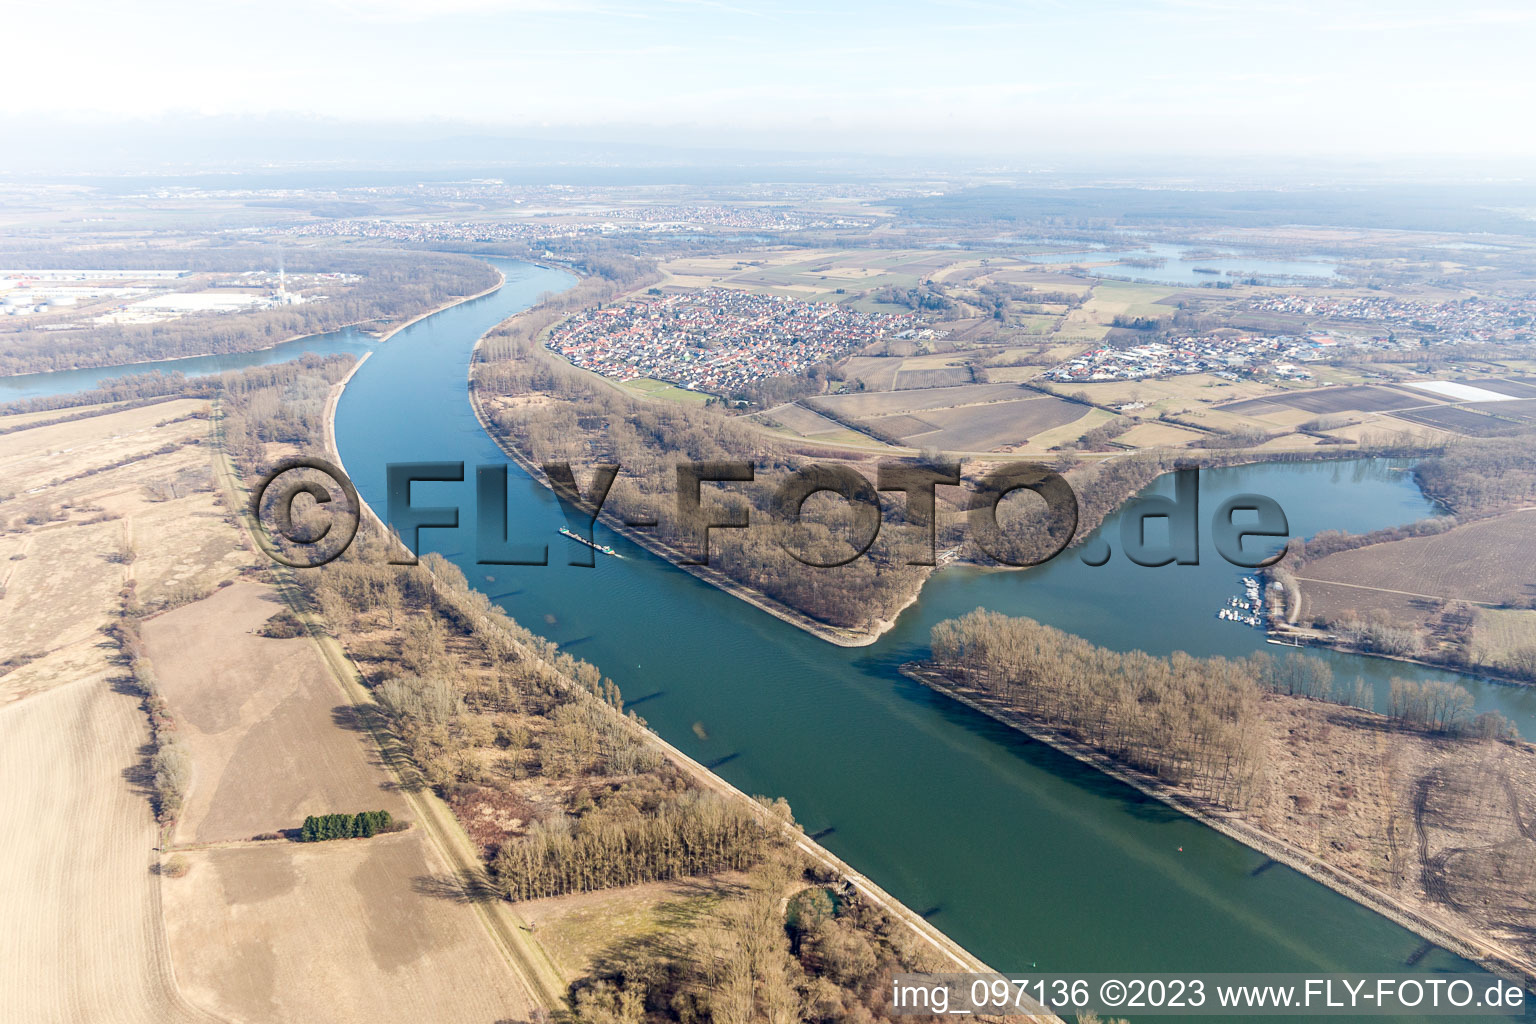 Aerial view of District Rheinhausen in Oberhausen-Rheinhausen in the state Baden-Wuerttemberg, Germany